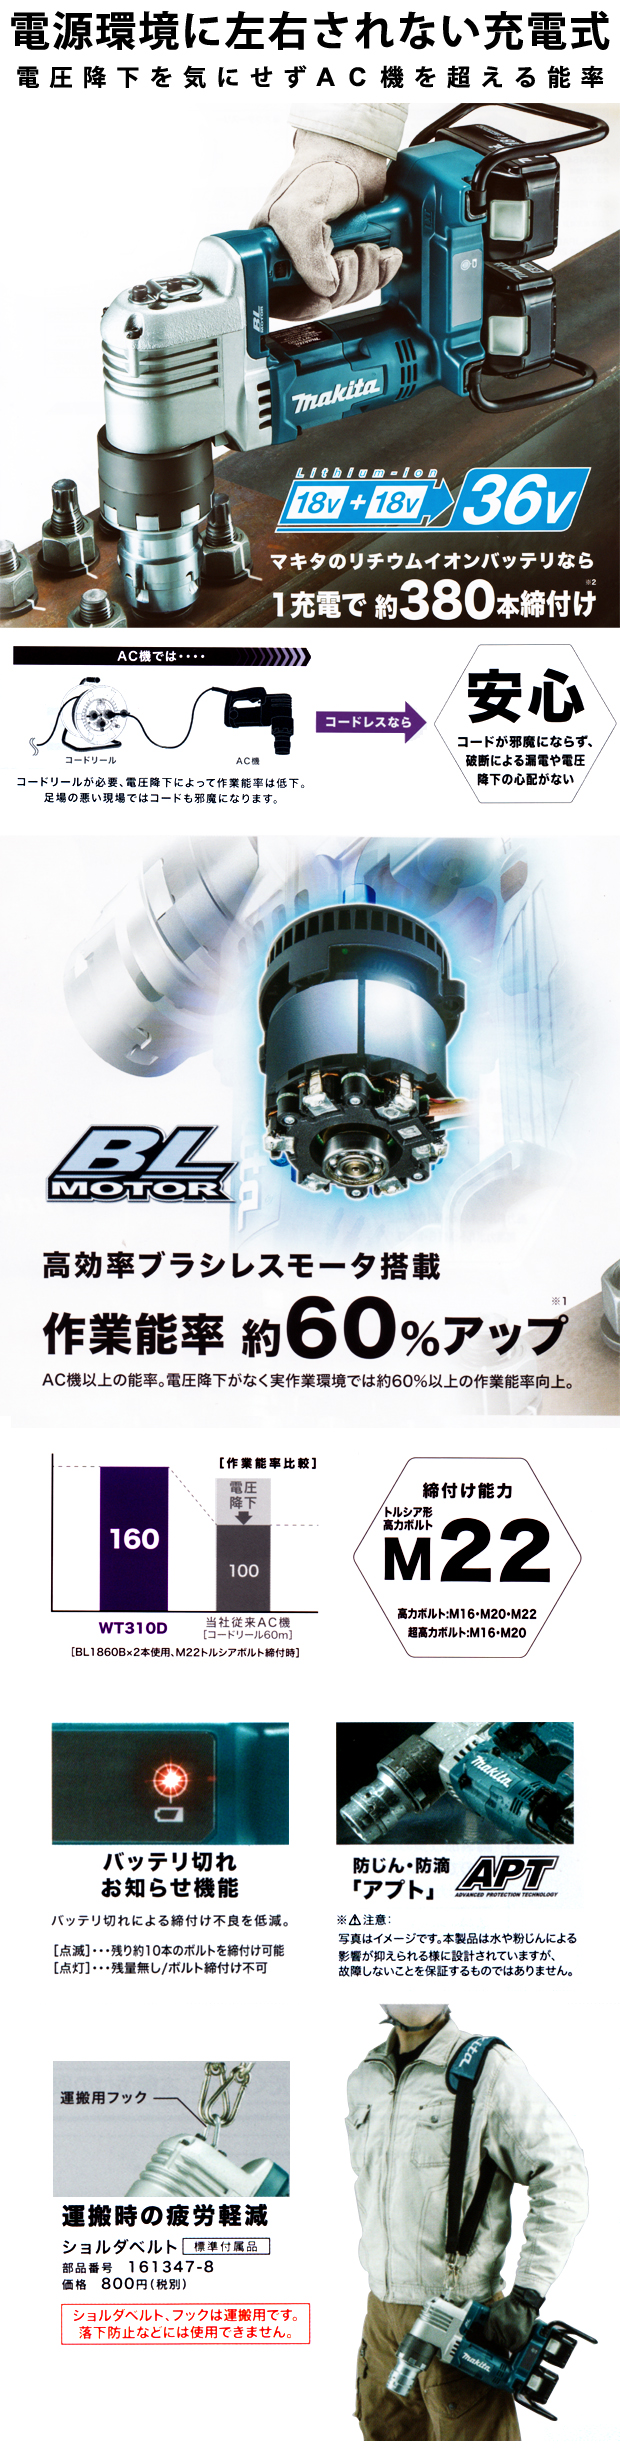 マキタ 充電式シャーレンチ WT310DPG2/DZK 電動工具・エアー工具・大工 